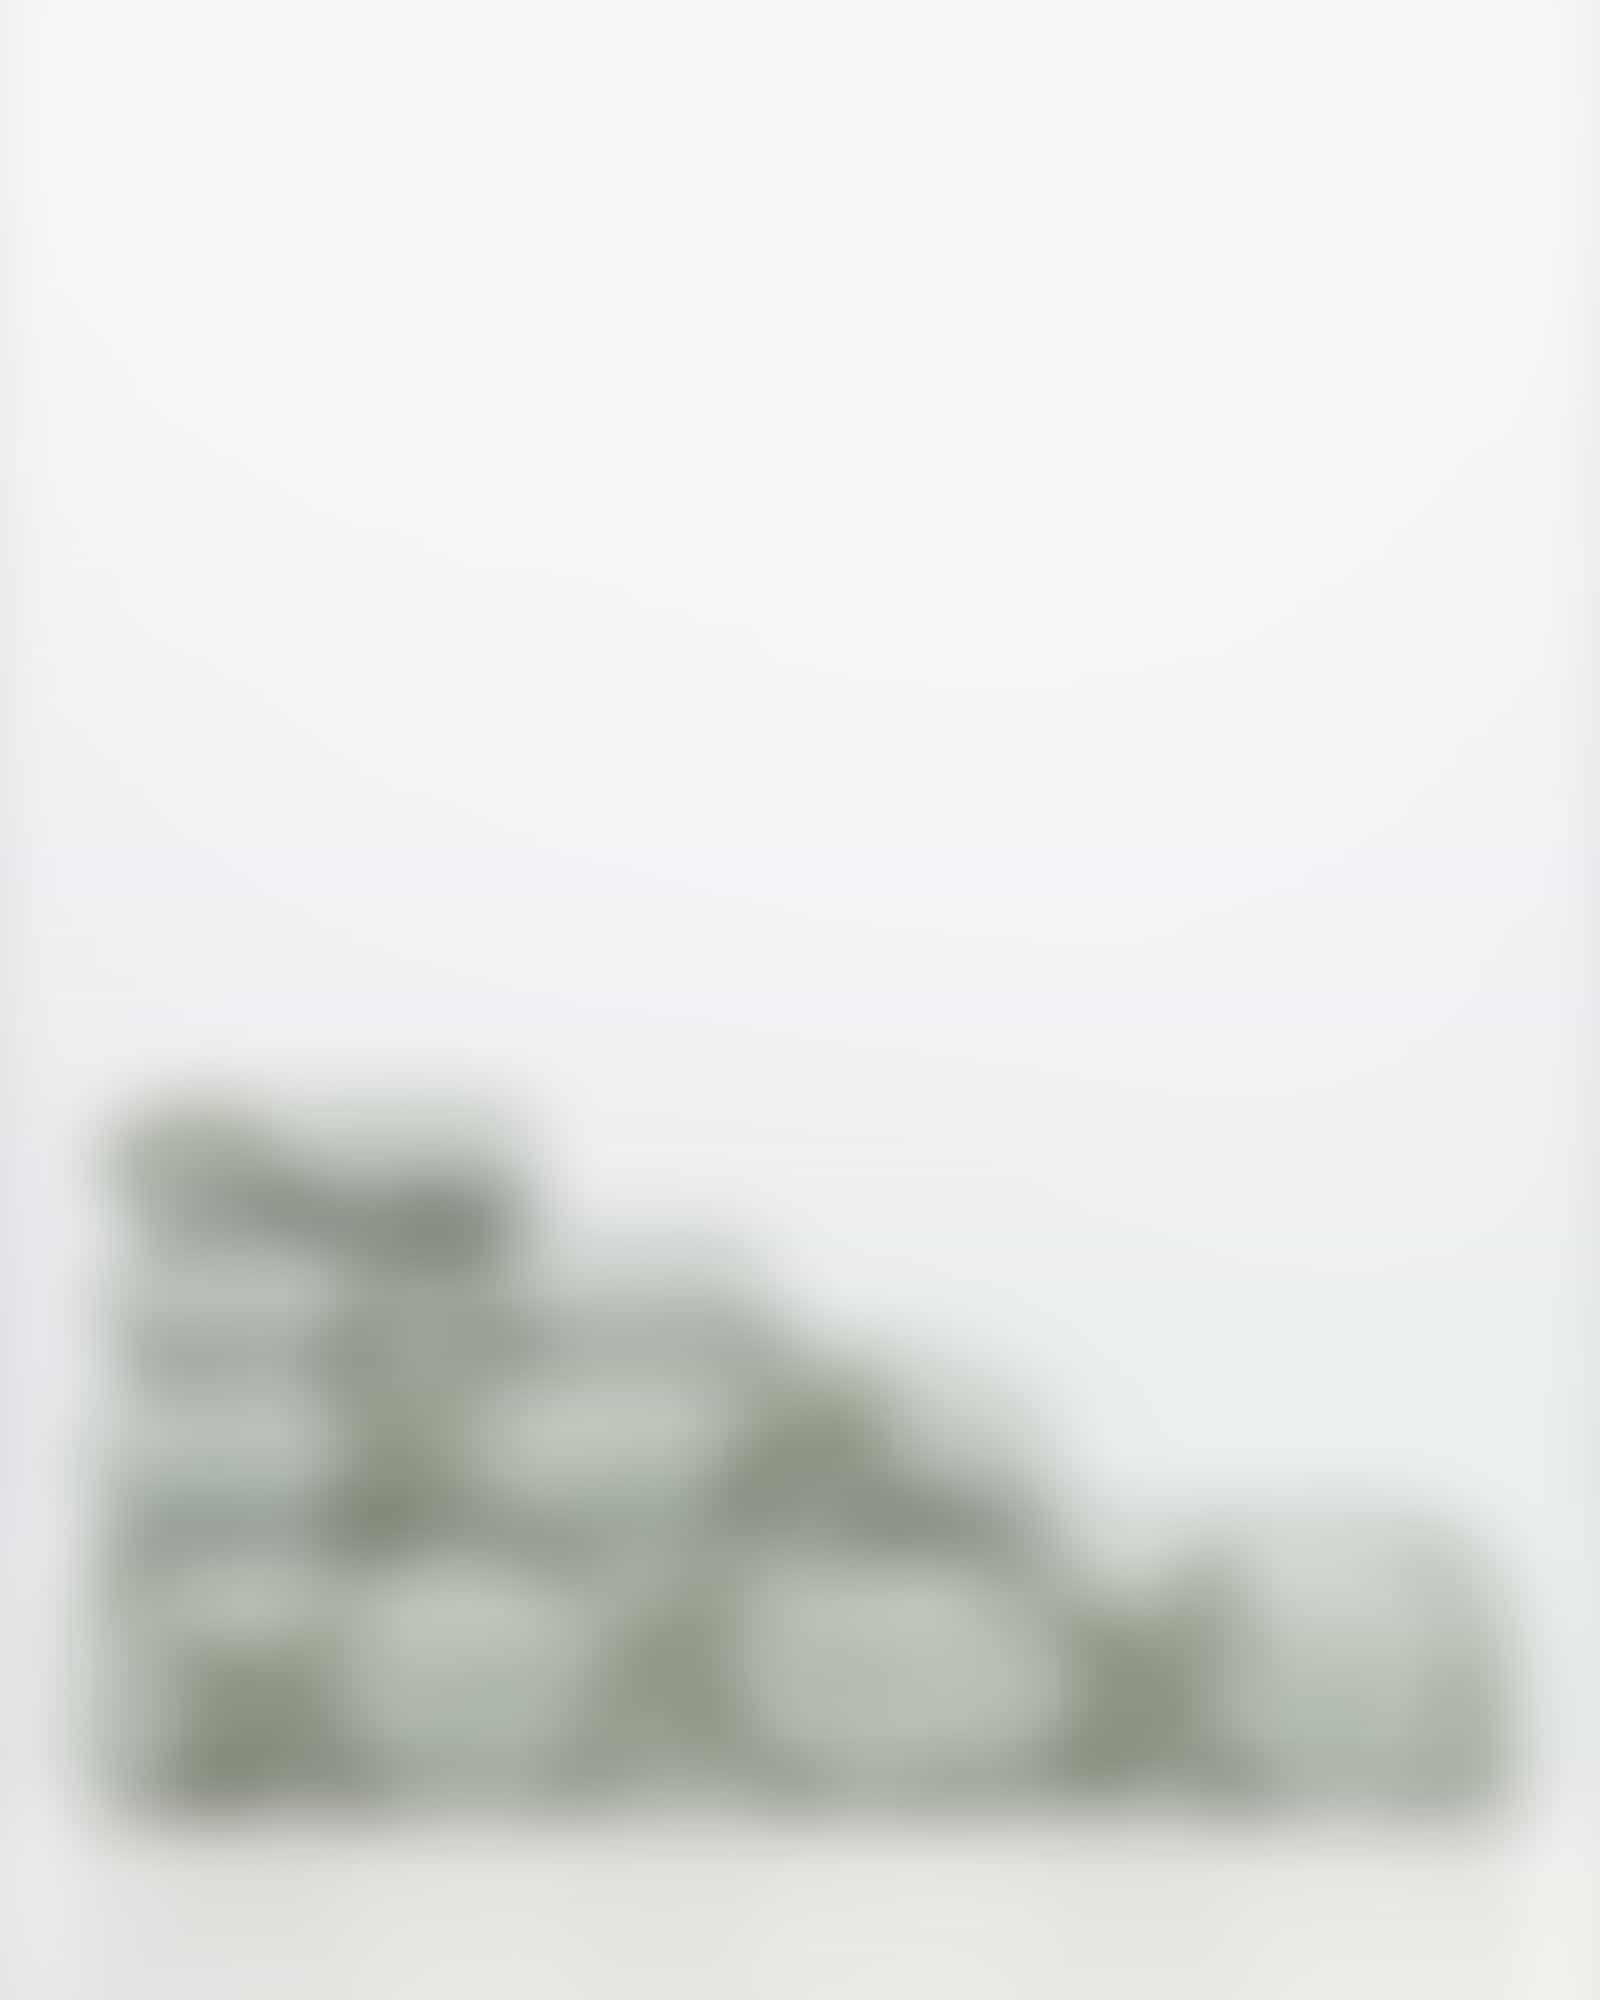 JOOP! Classic - Cornflower 1611 - Farbe: Salbei - 47 - Handtuch 50x100 cm